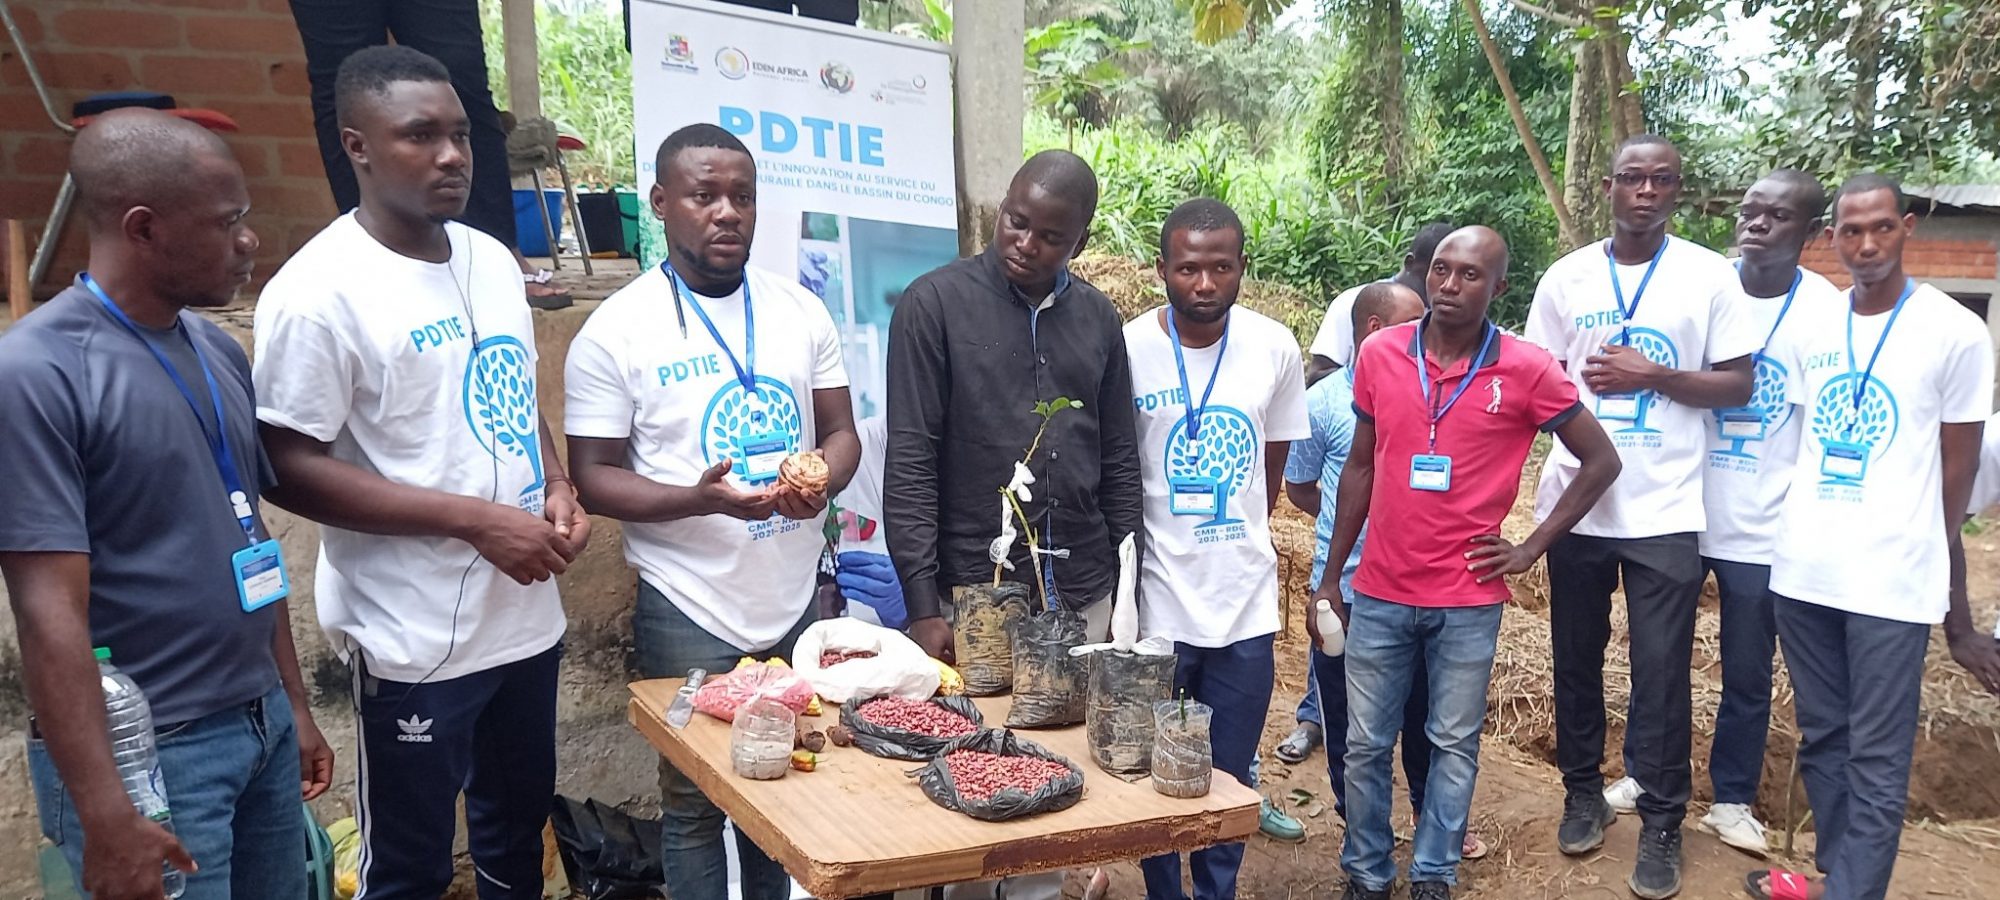 PDTIE – Plus de 200 jeunes du Bassin du Congo participent à des formations pratiques et écologiques